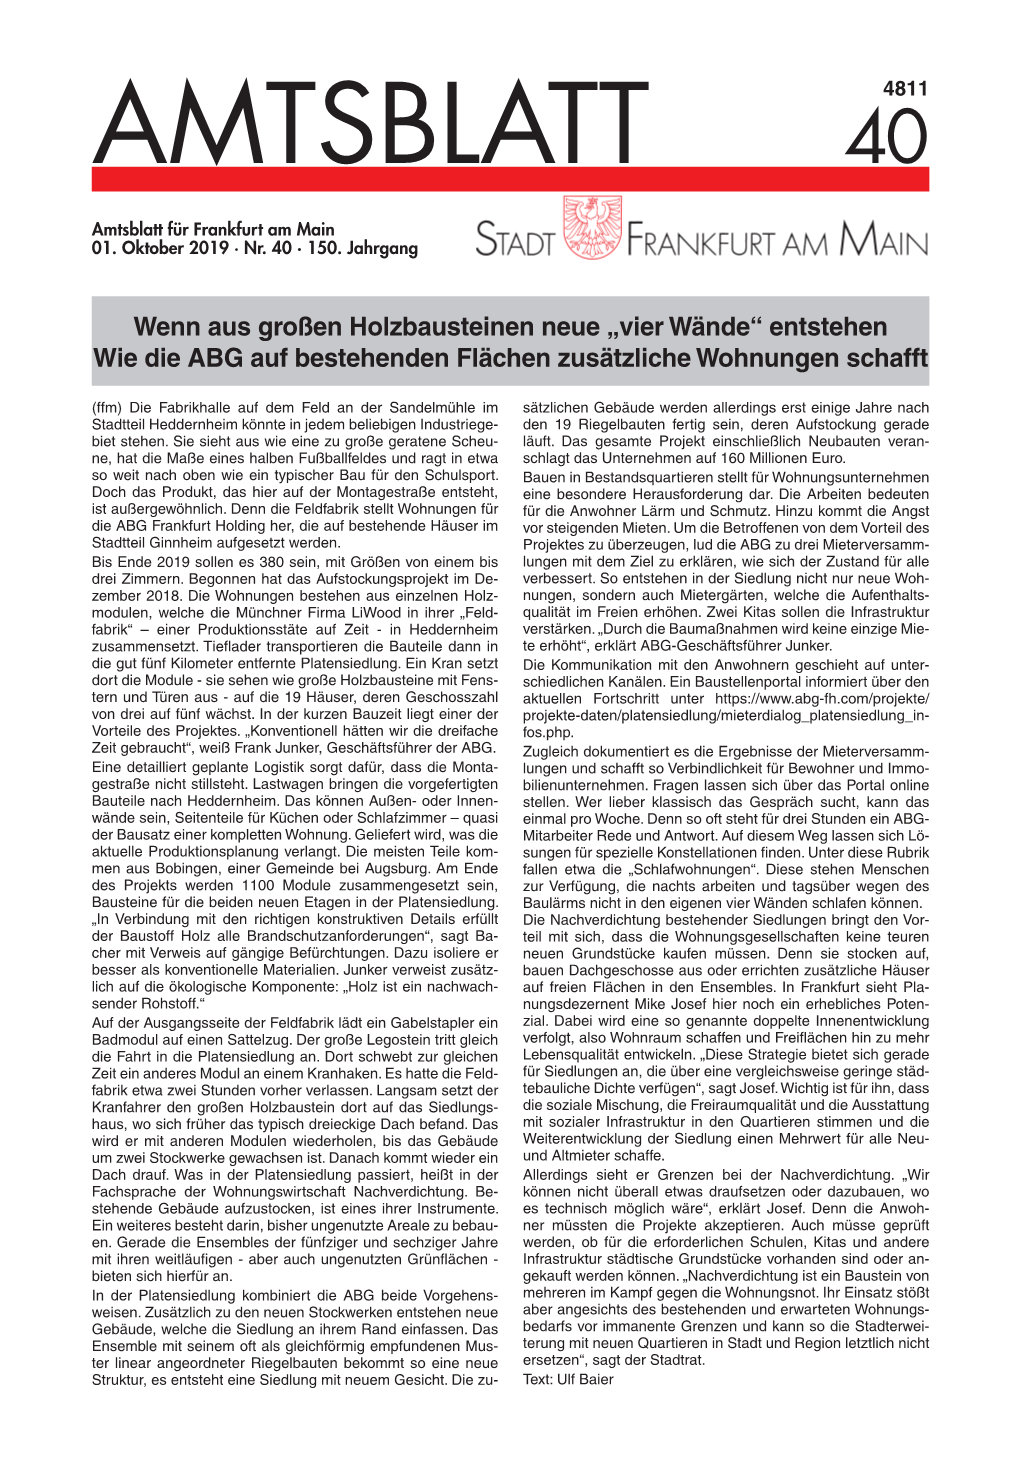 Amtsblatt 4 0